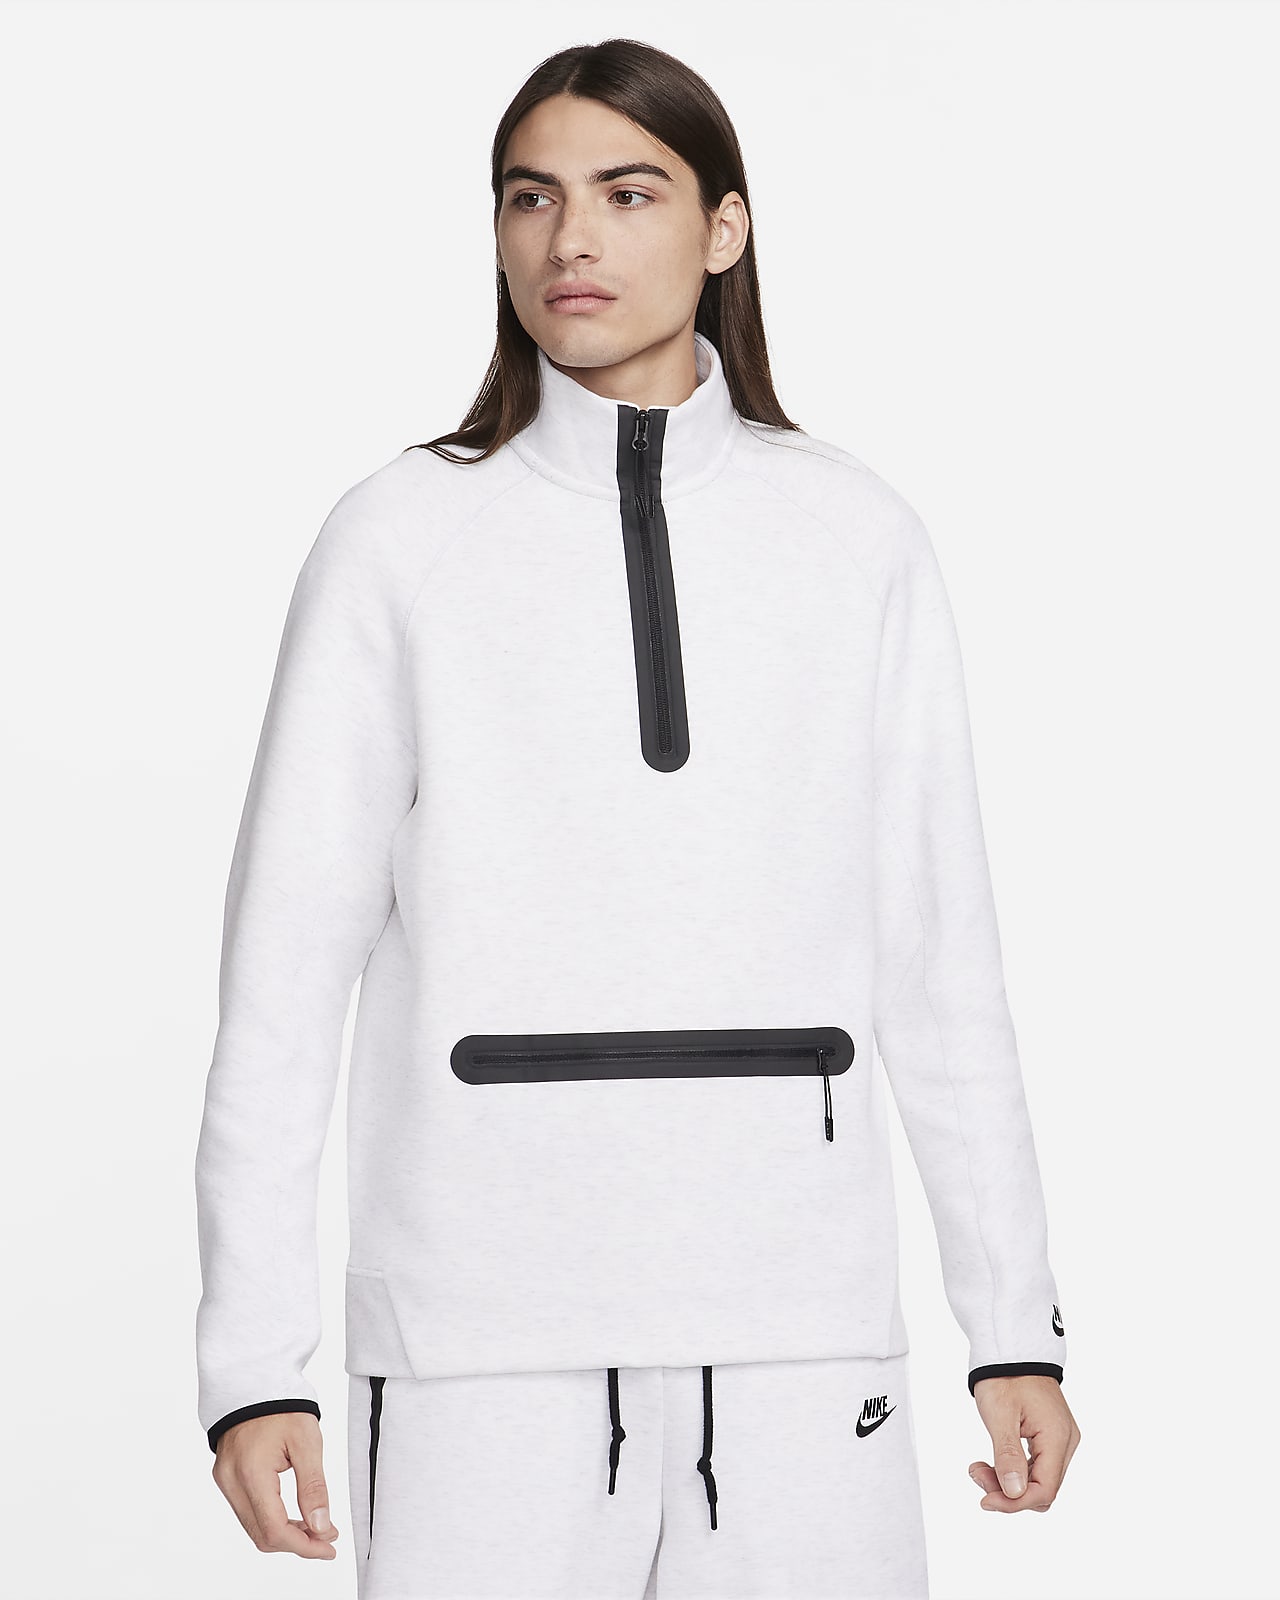 Ανδρικό φούτερ με φερμουάρ στο μισό μήκος Nike Sportswear Tech Fleece